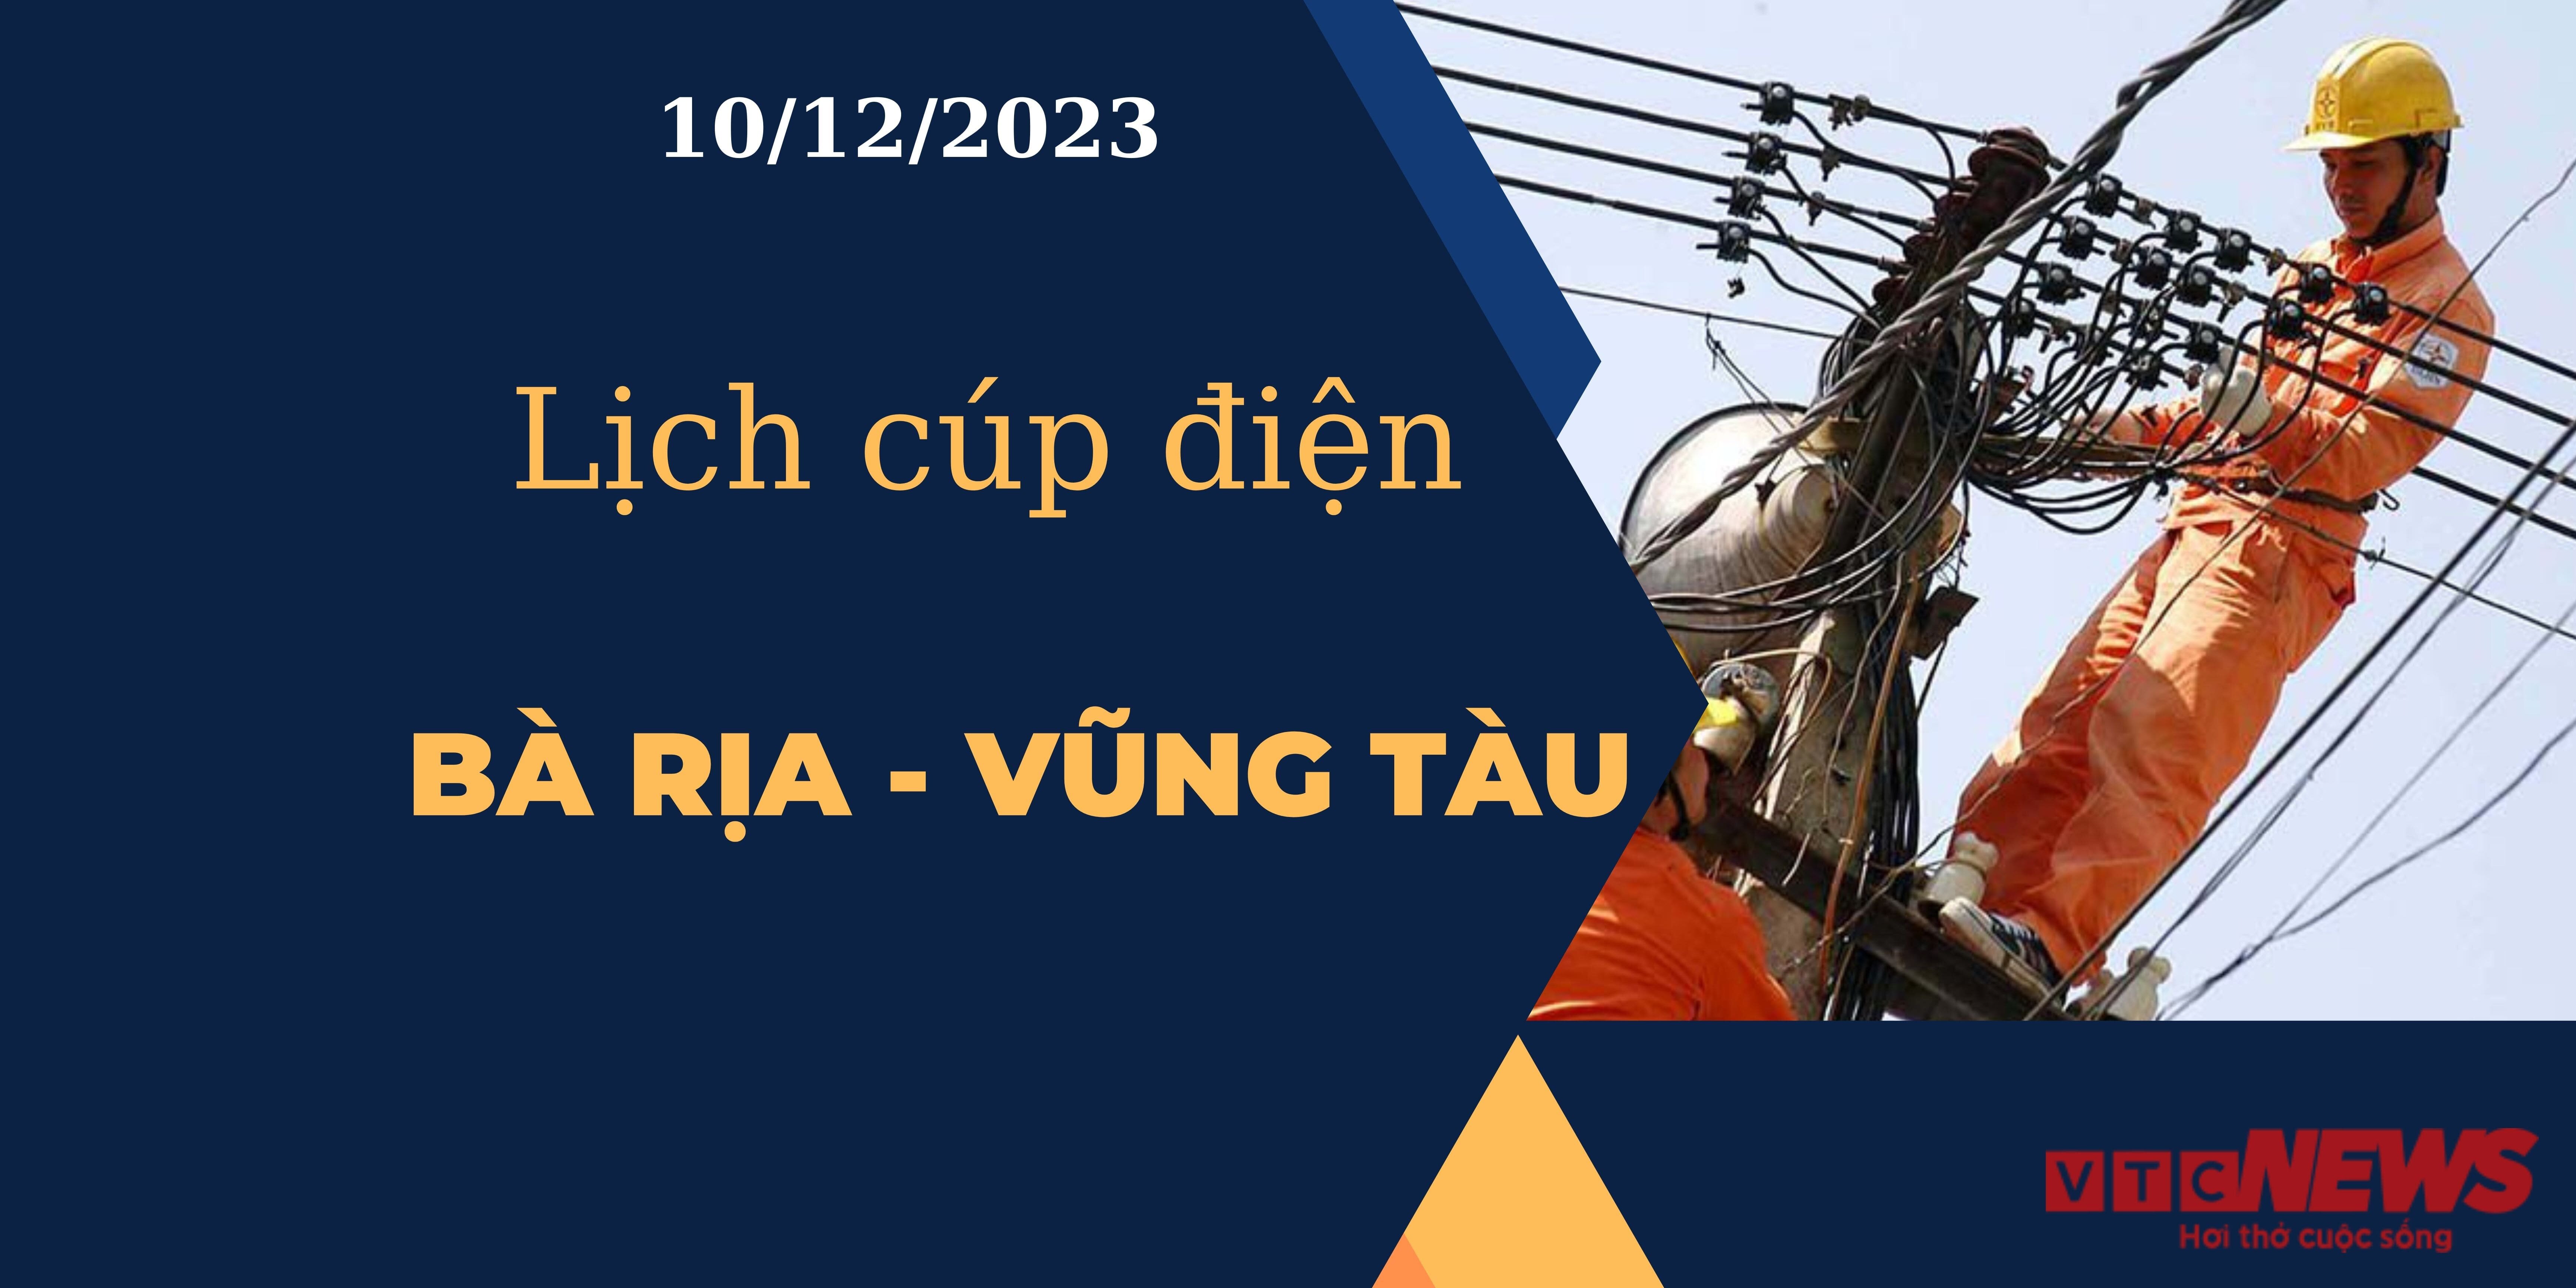 Lịch cúp điện Bà Rịa - Vũng Tàu ngày 10/12/2023